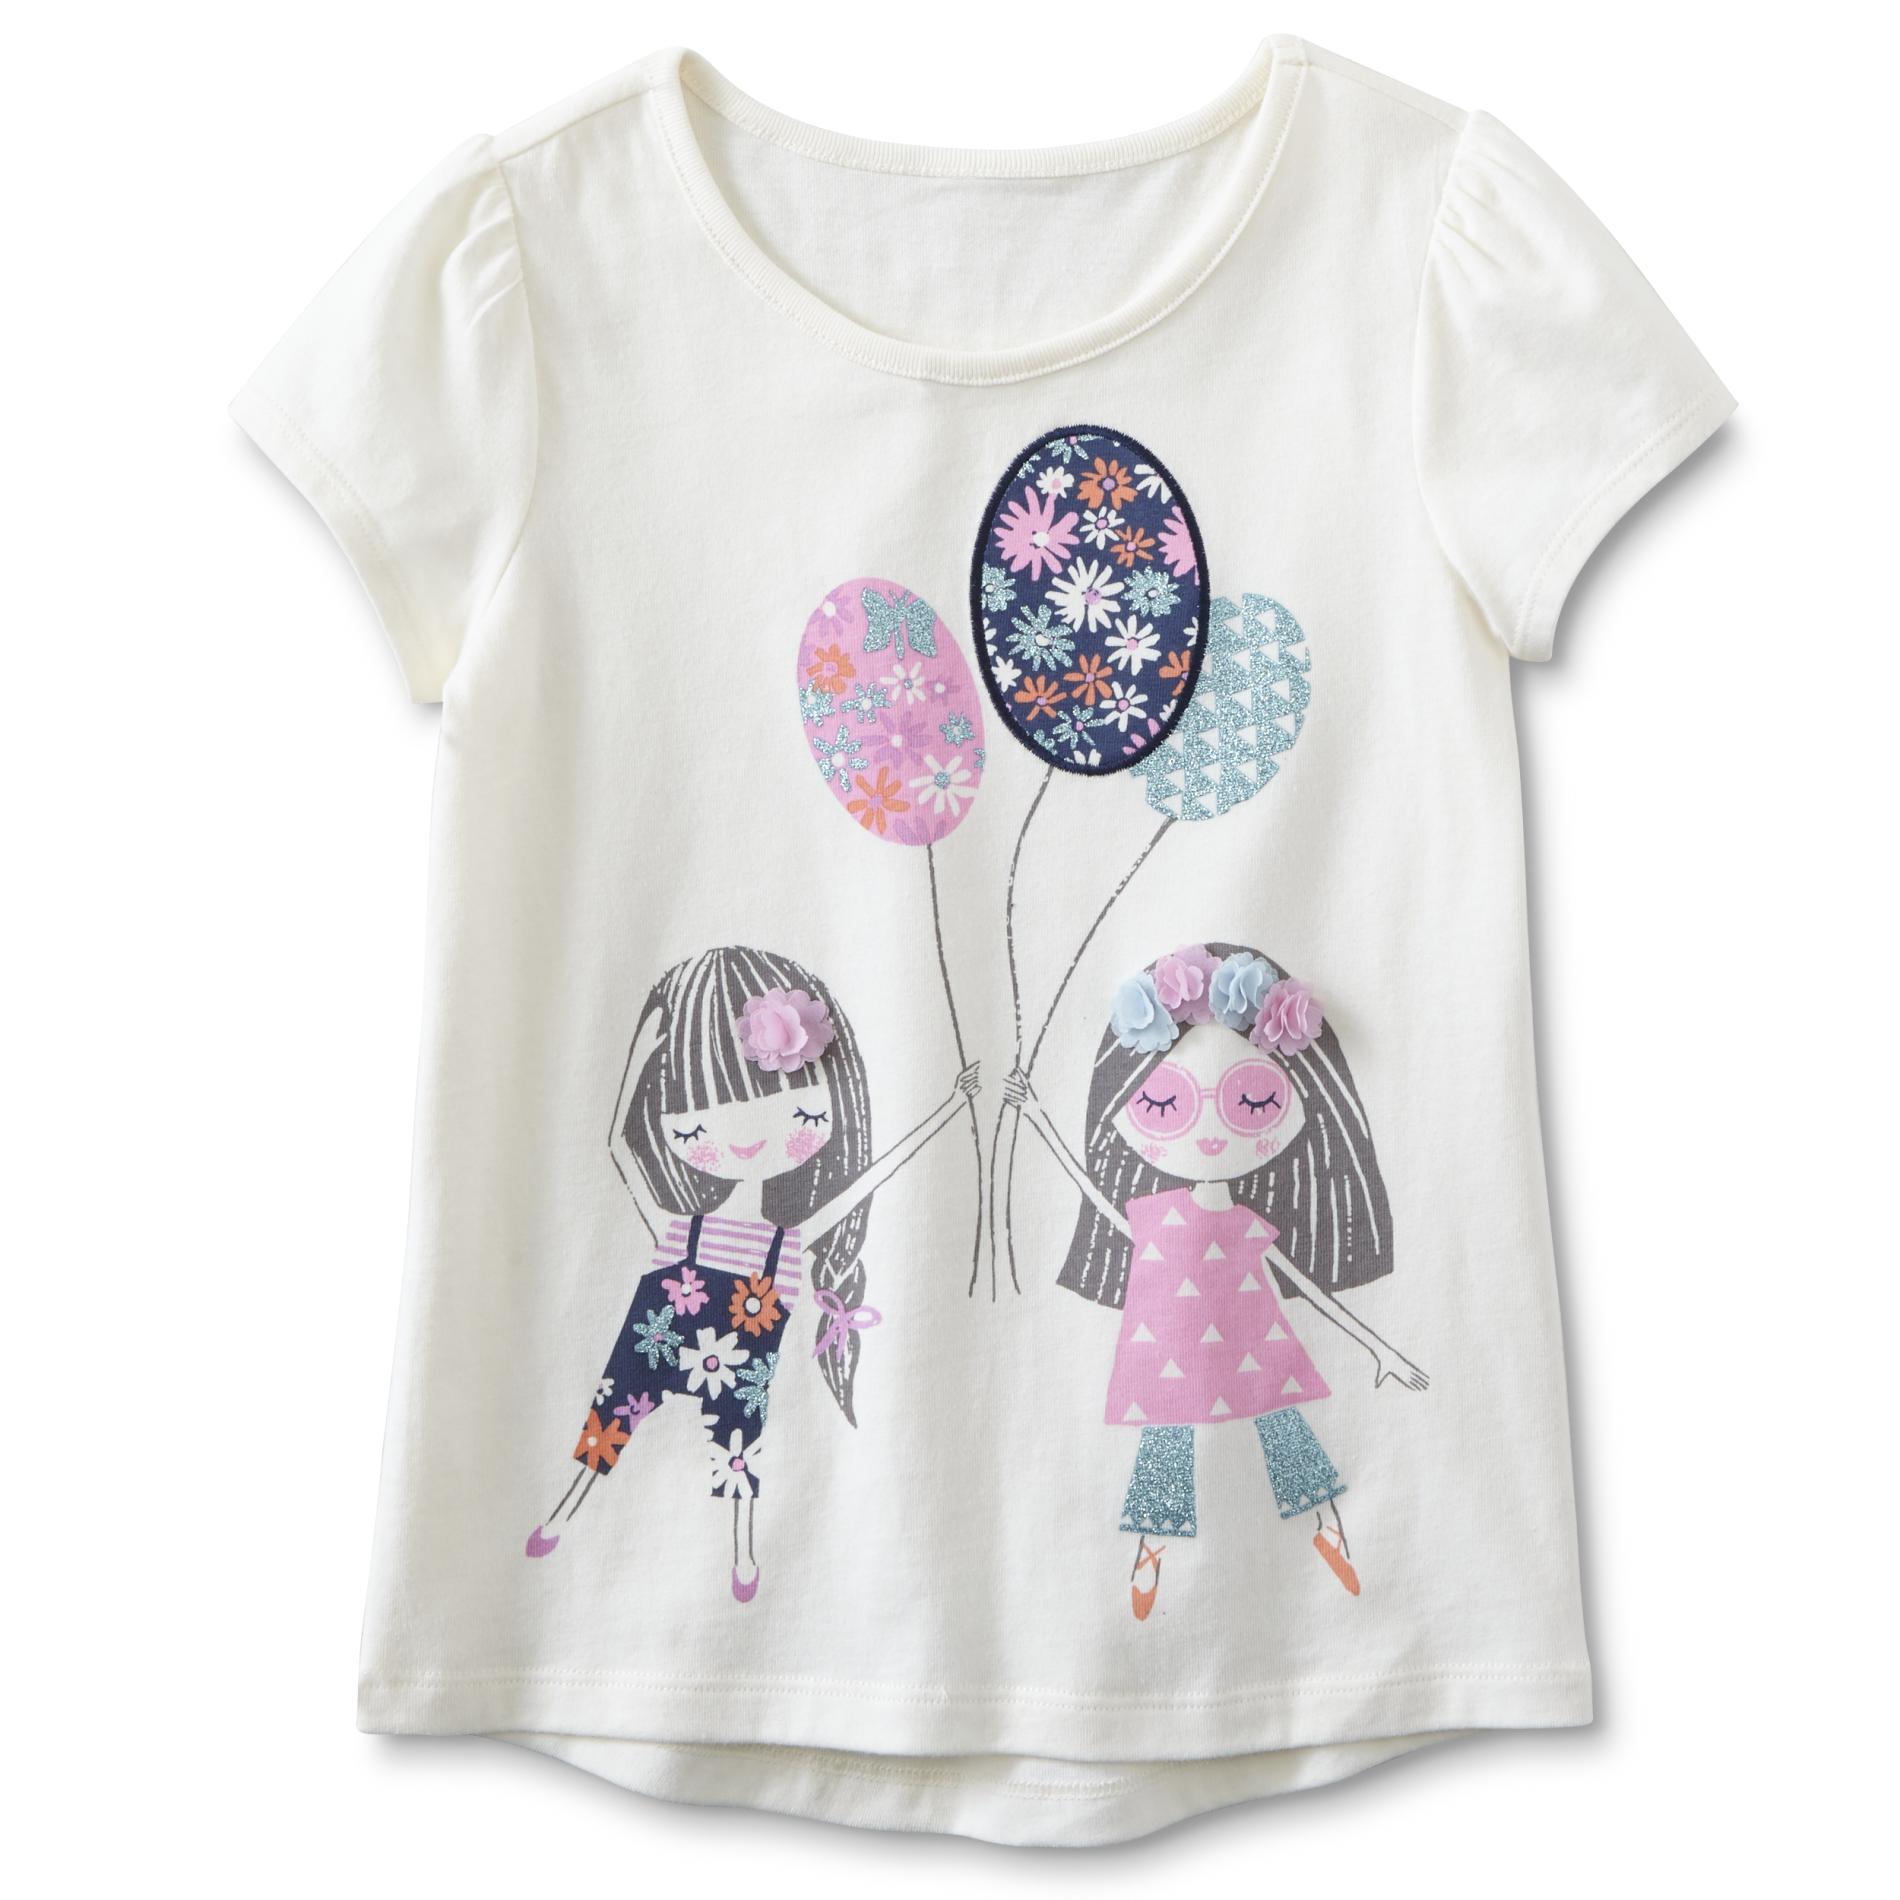 Toughskins Girls' Embellished T-Shirt - Balloons